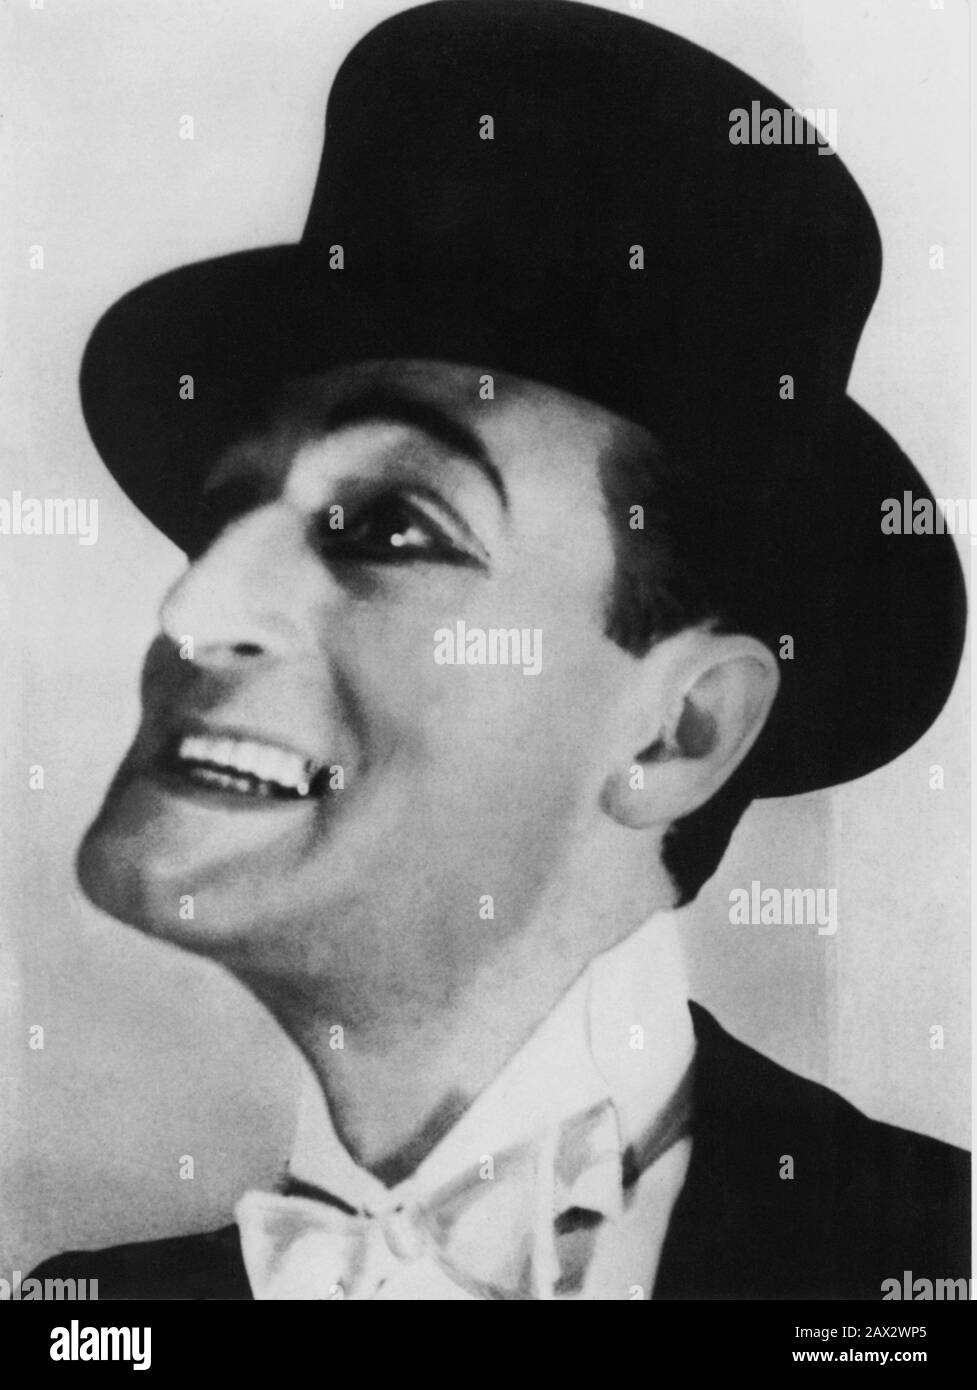 1930's , ITALY : The celebrated italian actor Totò ( born Antonio DE CURTIS Gagliardi Ducas Comneno di Bisanzio , Naples 1898 - Rome 1967 ) - ATTORE - TEATRO di rivista musicale - THEATER - THEATRE - avanspettacolo - musical - Toto' - CINEMA - tie - cravatta - colletto - collar - portrait - ritratto  - smile - sorriso - top hat - cappello a cilindro - CINEMA - SMILE - SORRISO - tie bow - papillon - cravatta - collar - colletto  -  --- Archivio GBB Stock Photo